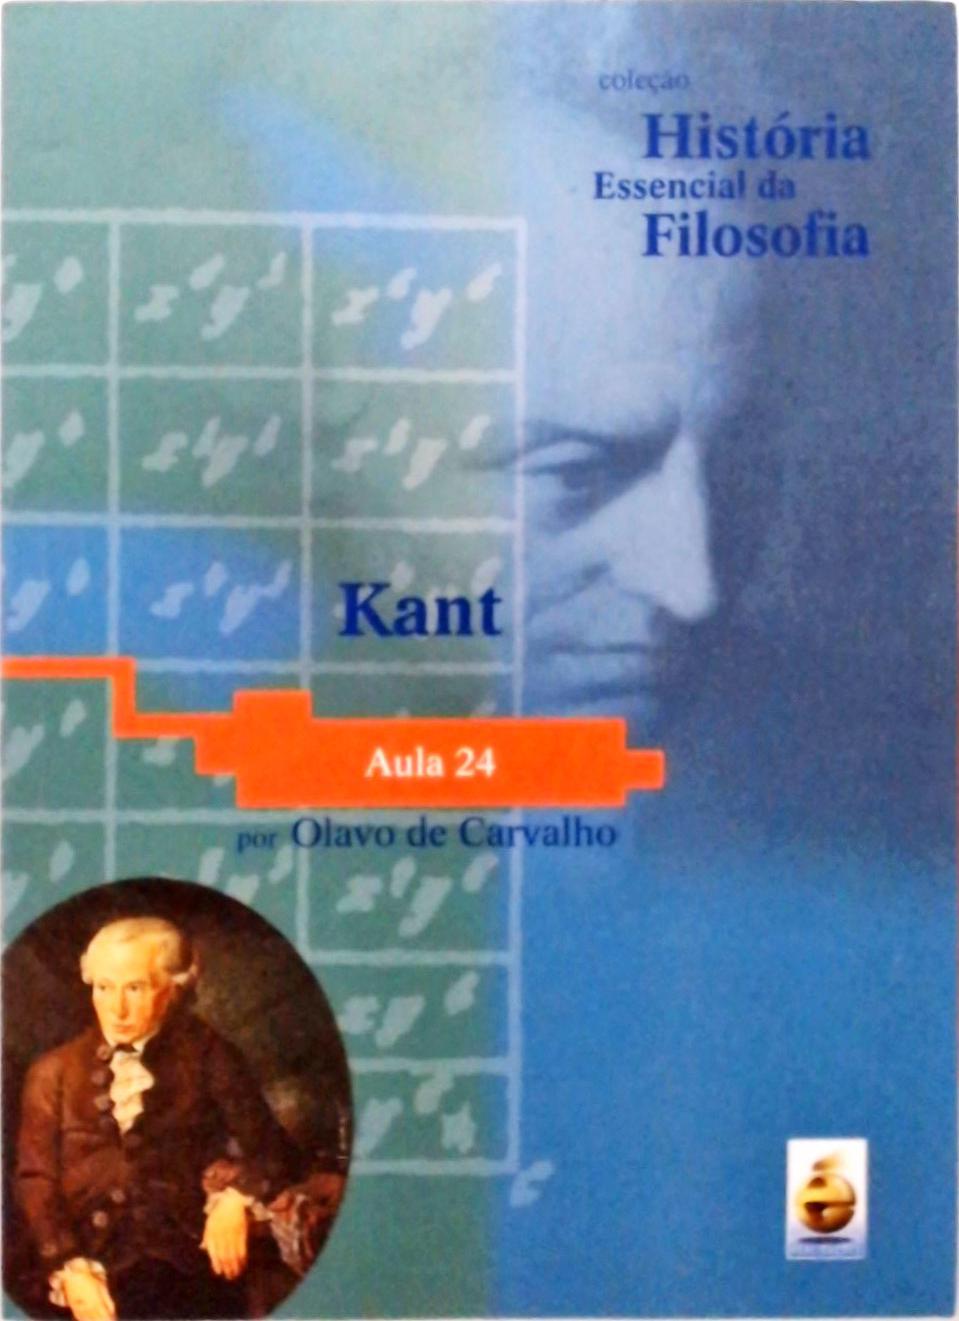 Kant + DVD